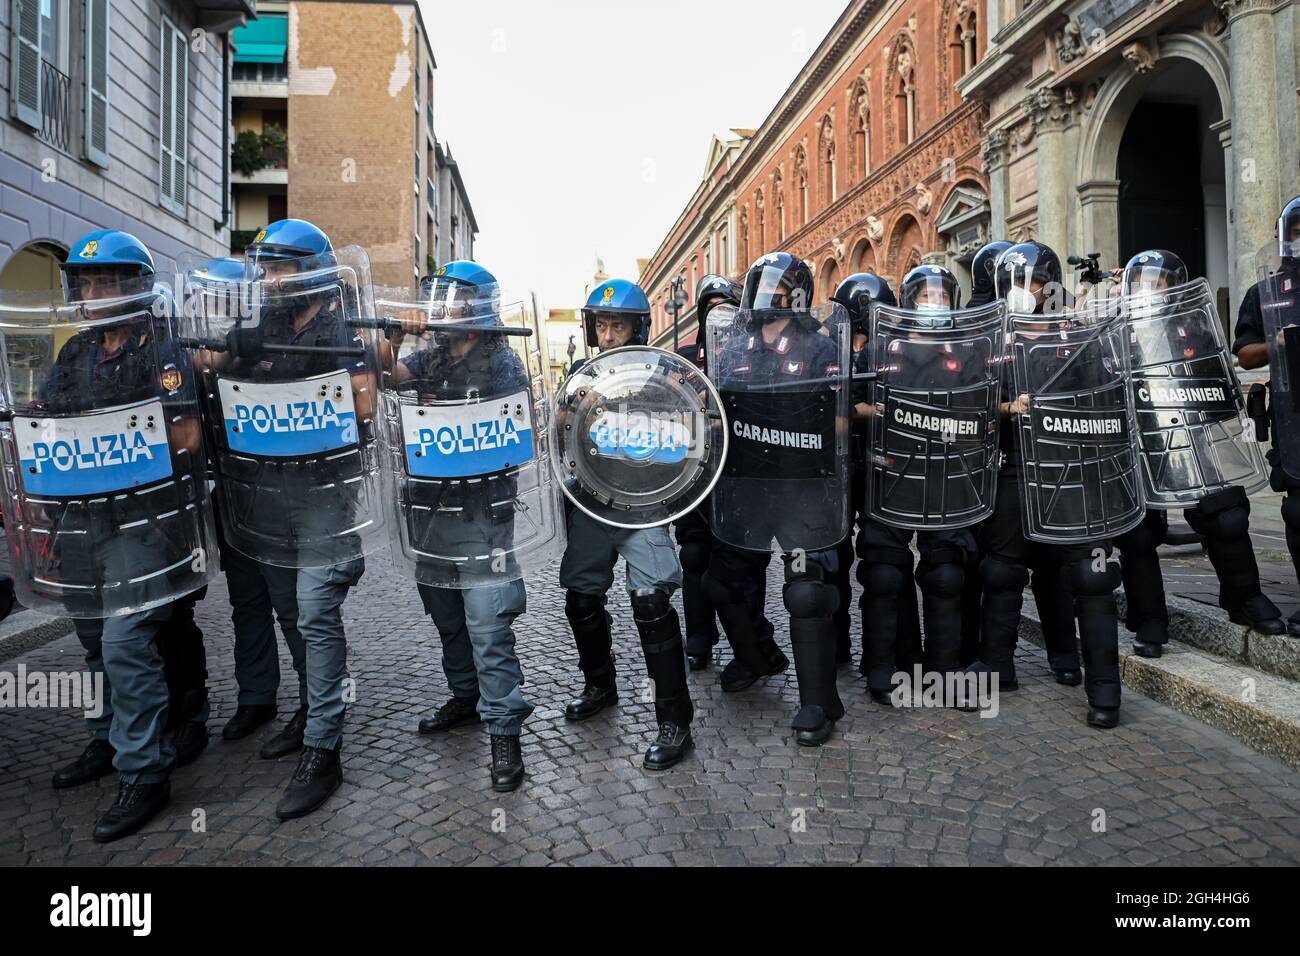 Mailand, Italien - 5. September 2021: Italienische Polizeibeamte in voller Krawallausrüstung während eines Protestes gegen den obligatorischen Gesundheitsausweis Stockfoto